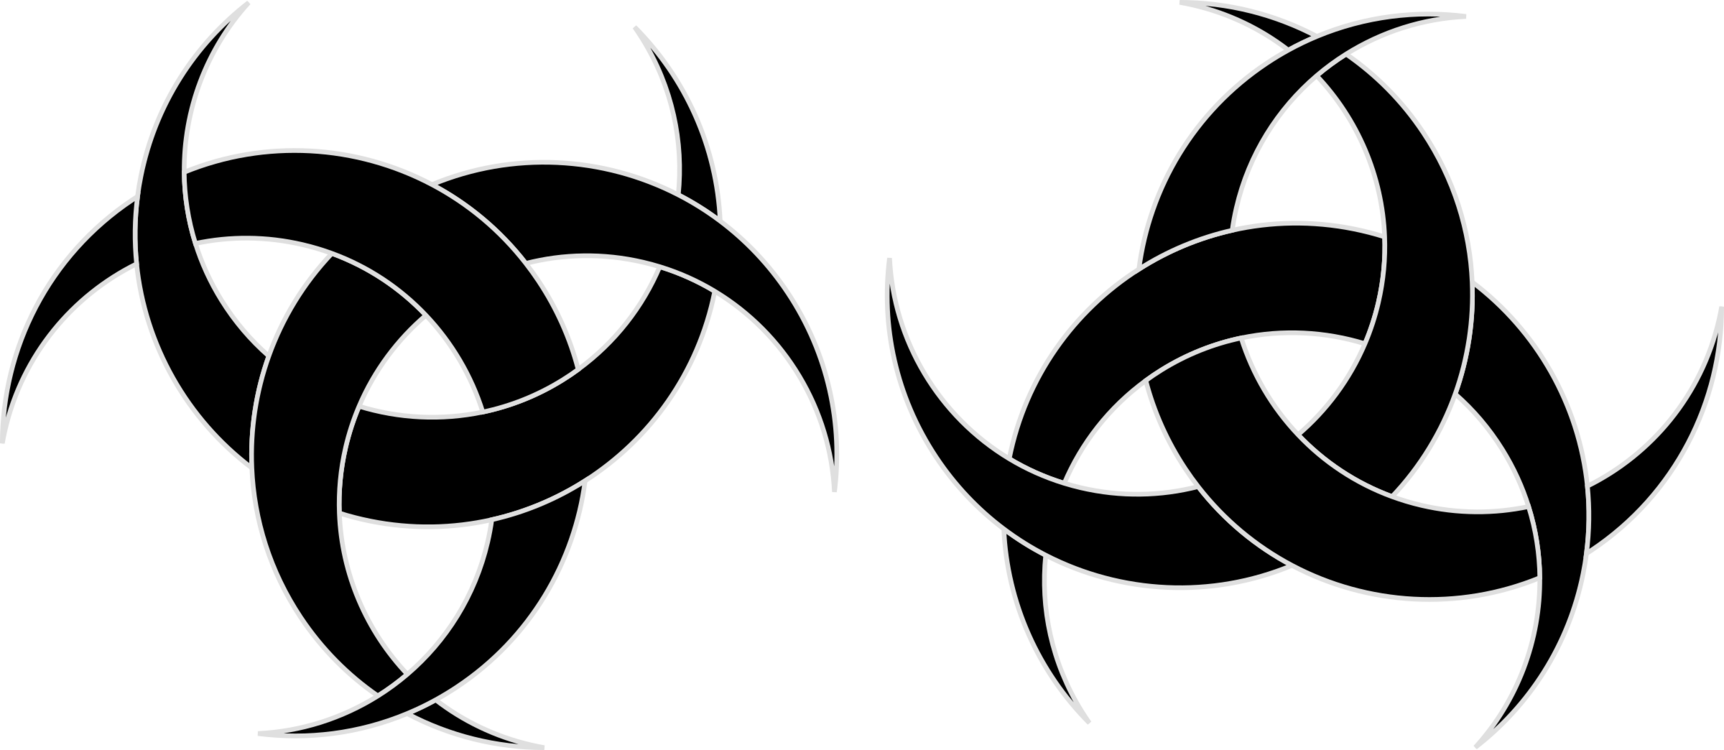 Logo,Blackandwhite,Religion